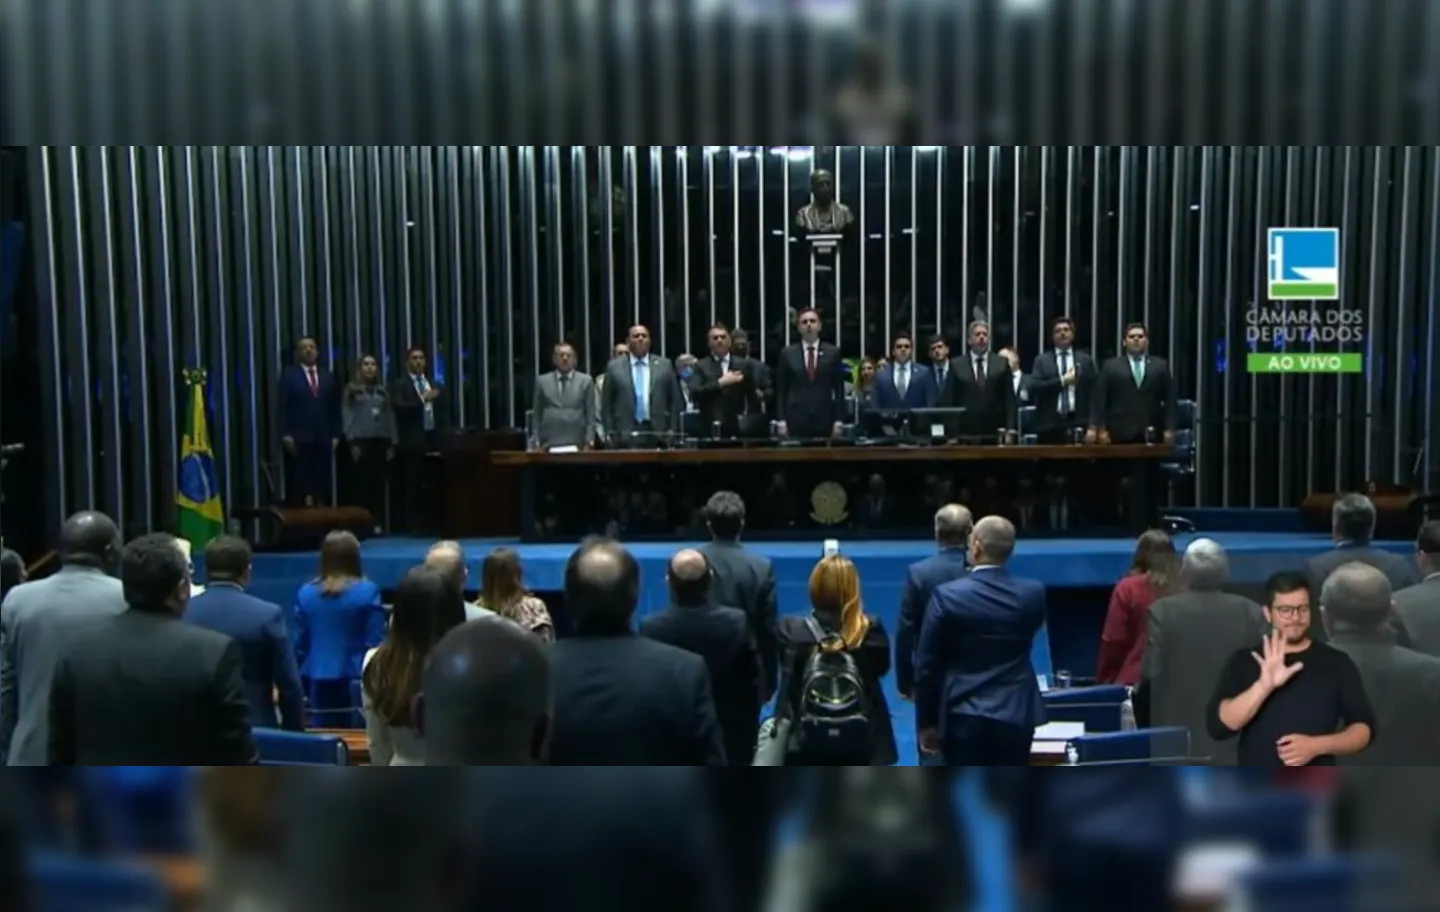 O presidente Jair Bolsonaro (PL) e outras autoridades estiveram presentes no ato de promulgação da PEC dos Auxílios